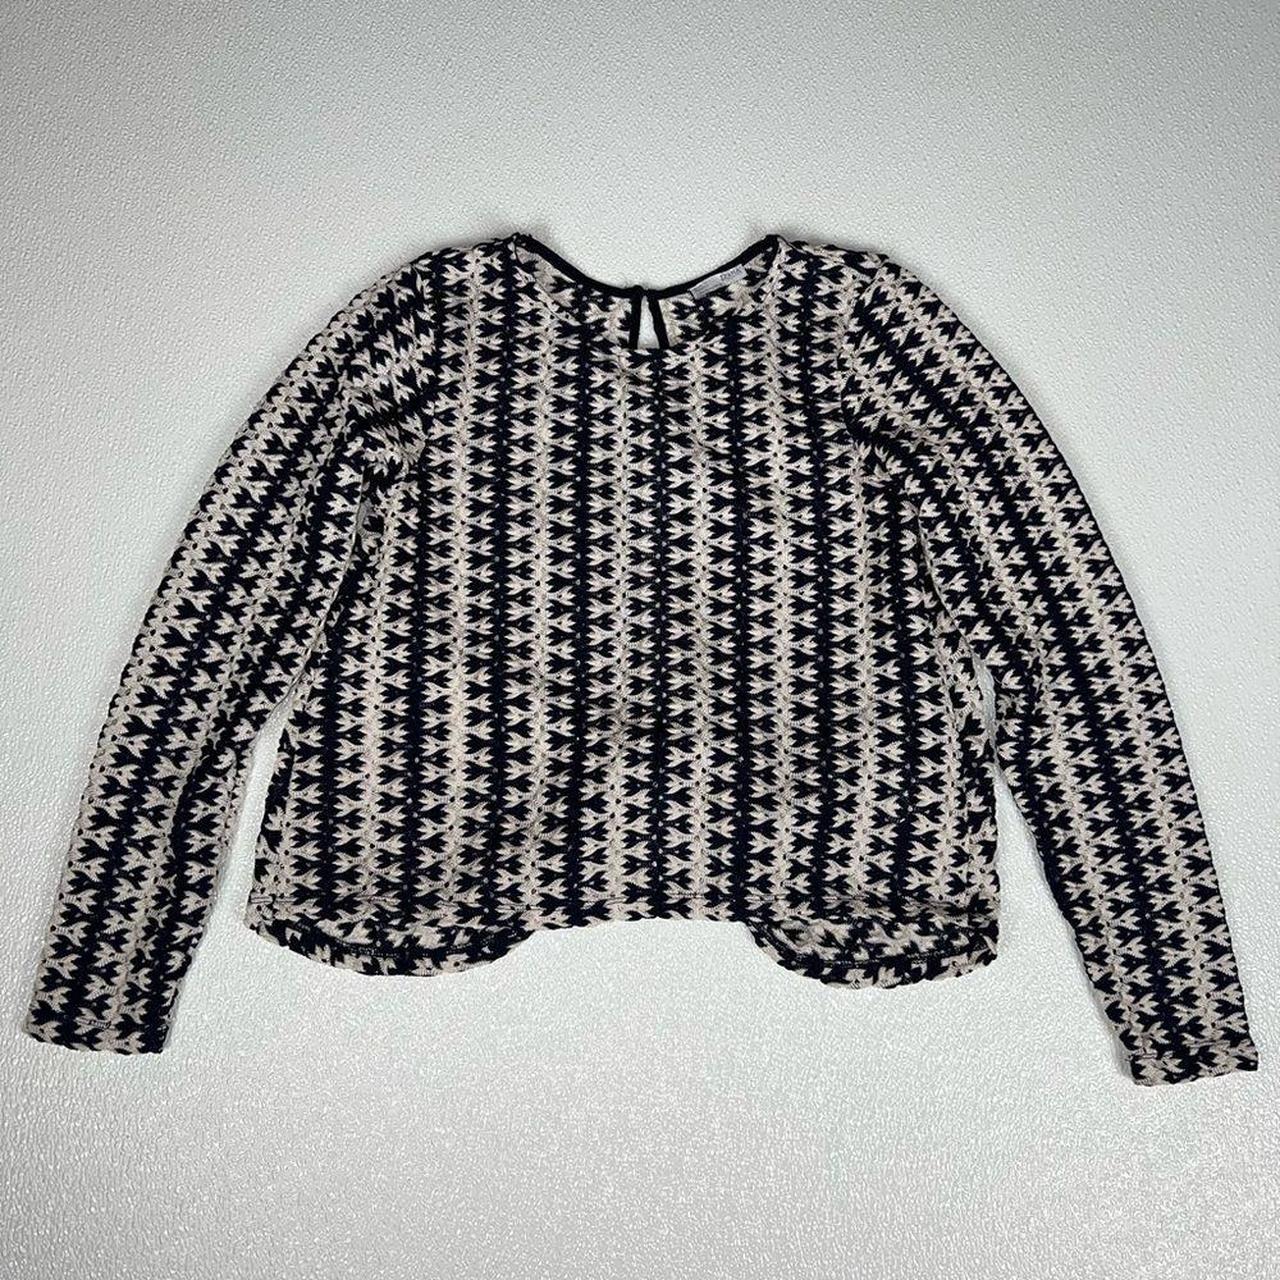 Zara B/W Collection Knit Open Back Long Sleeve Top... - Depop